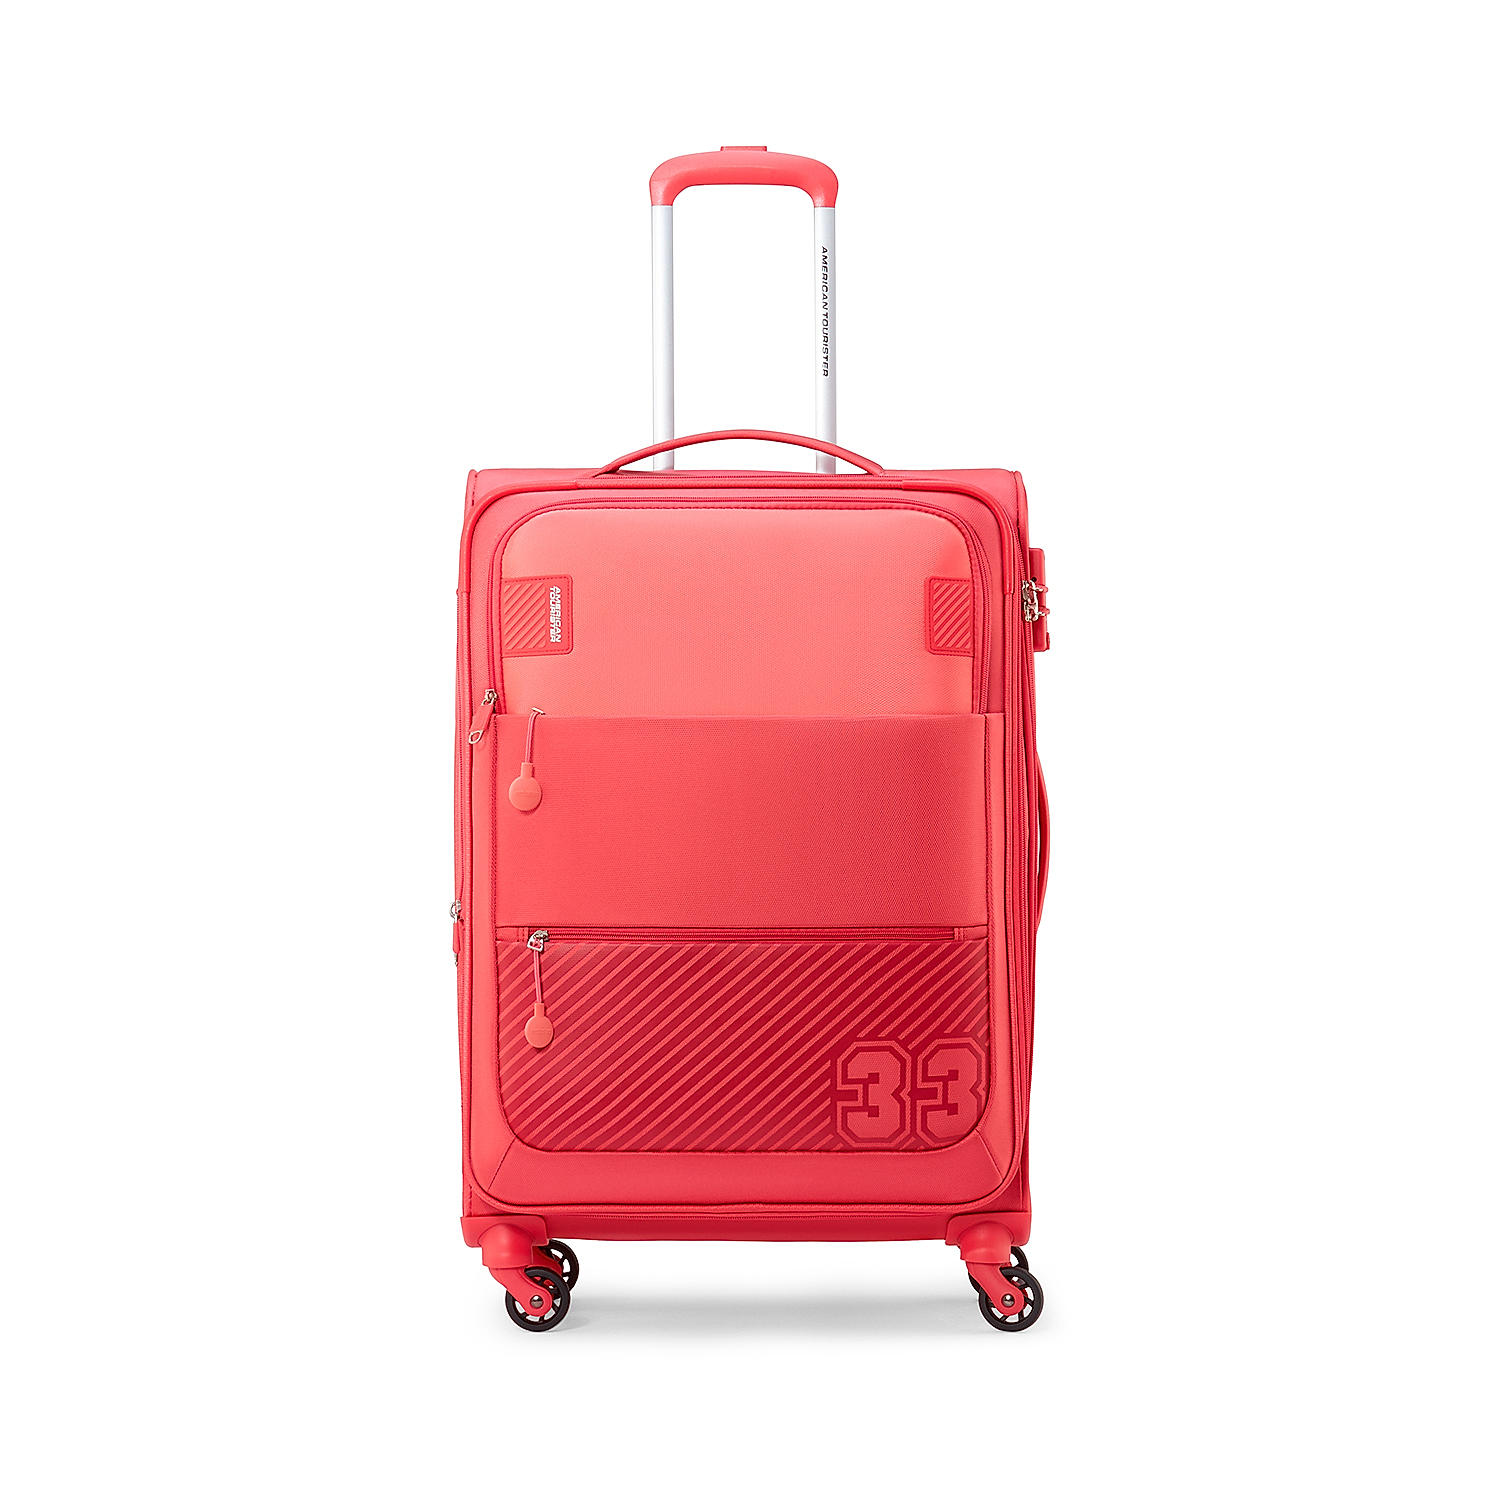 Red Trolley Bag | 65 CM Travel Luggage - Buy Trolley Bags & Travel Luggage  Online - Arrival Luggage